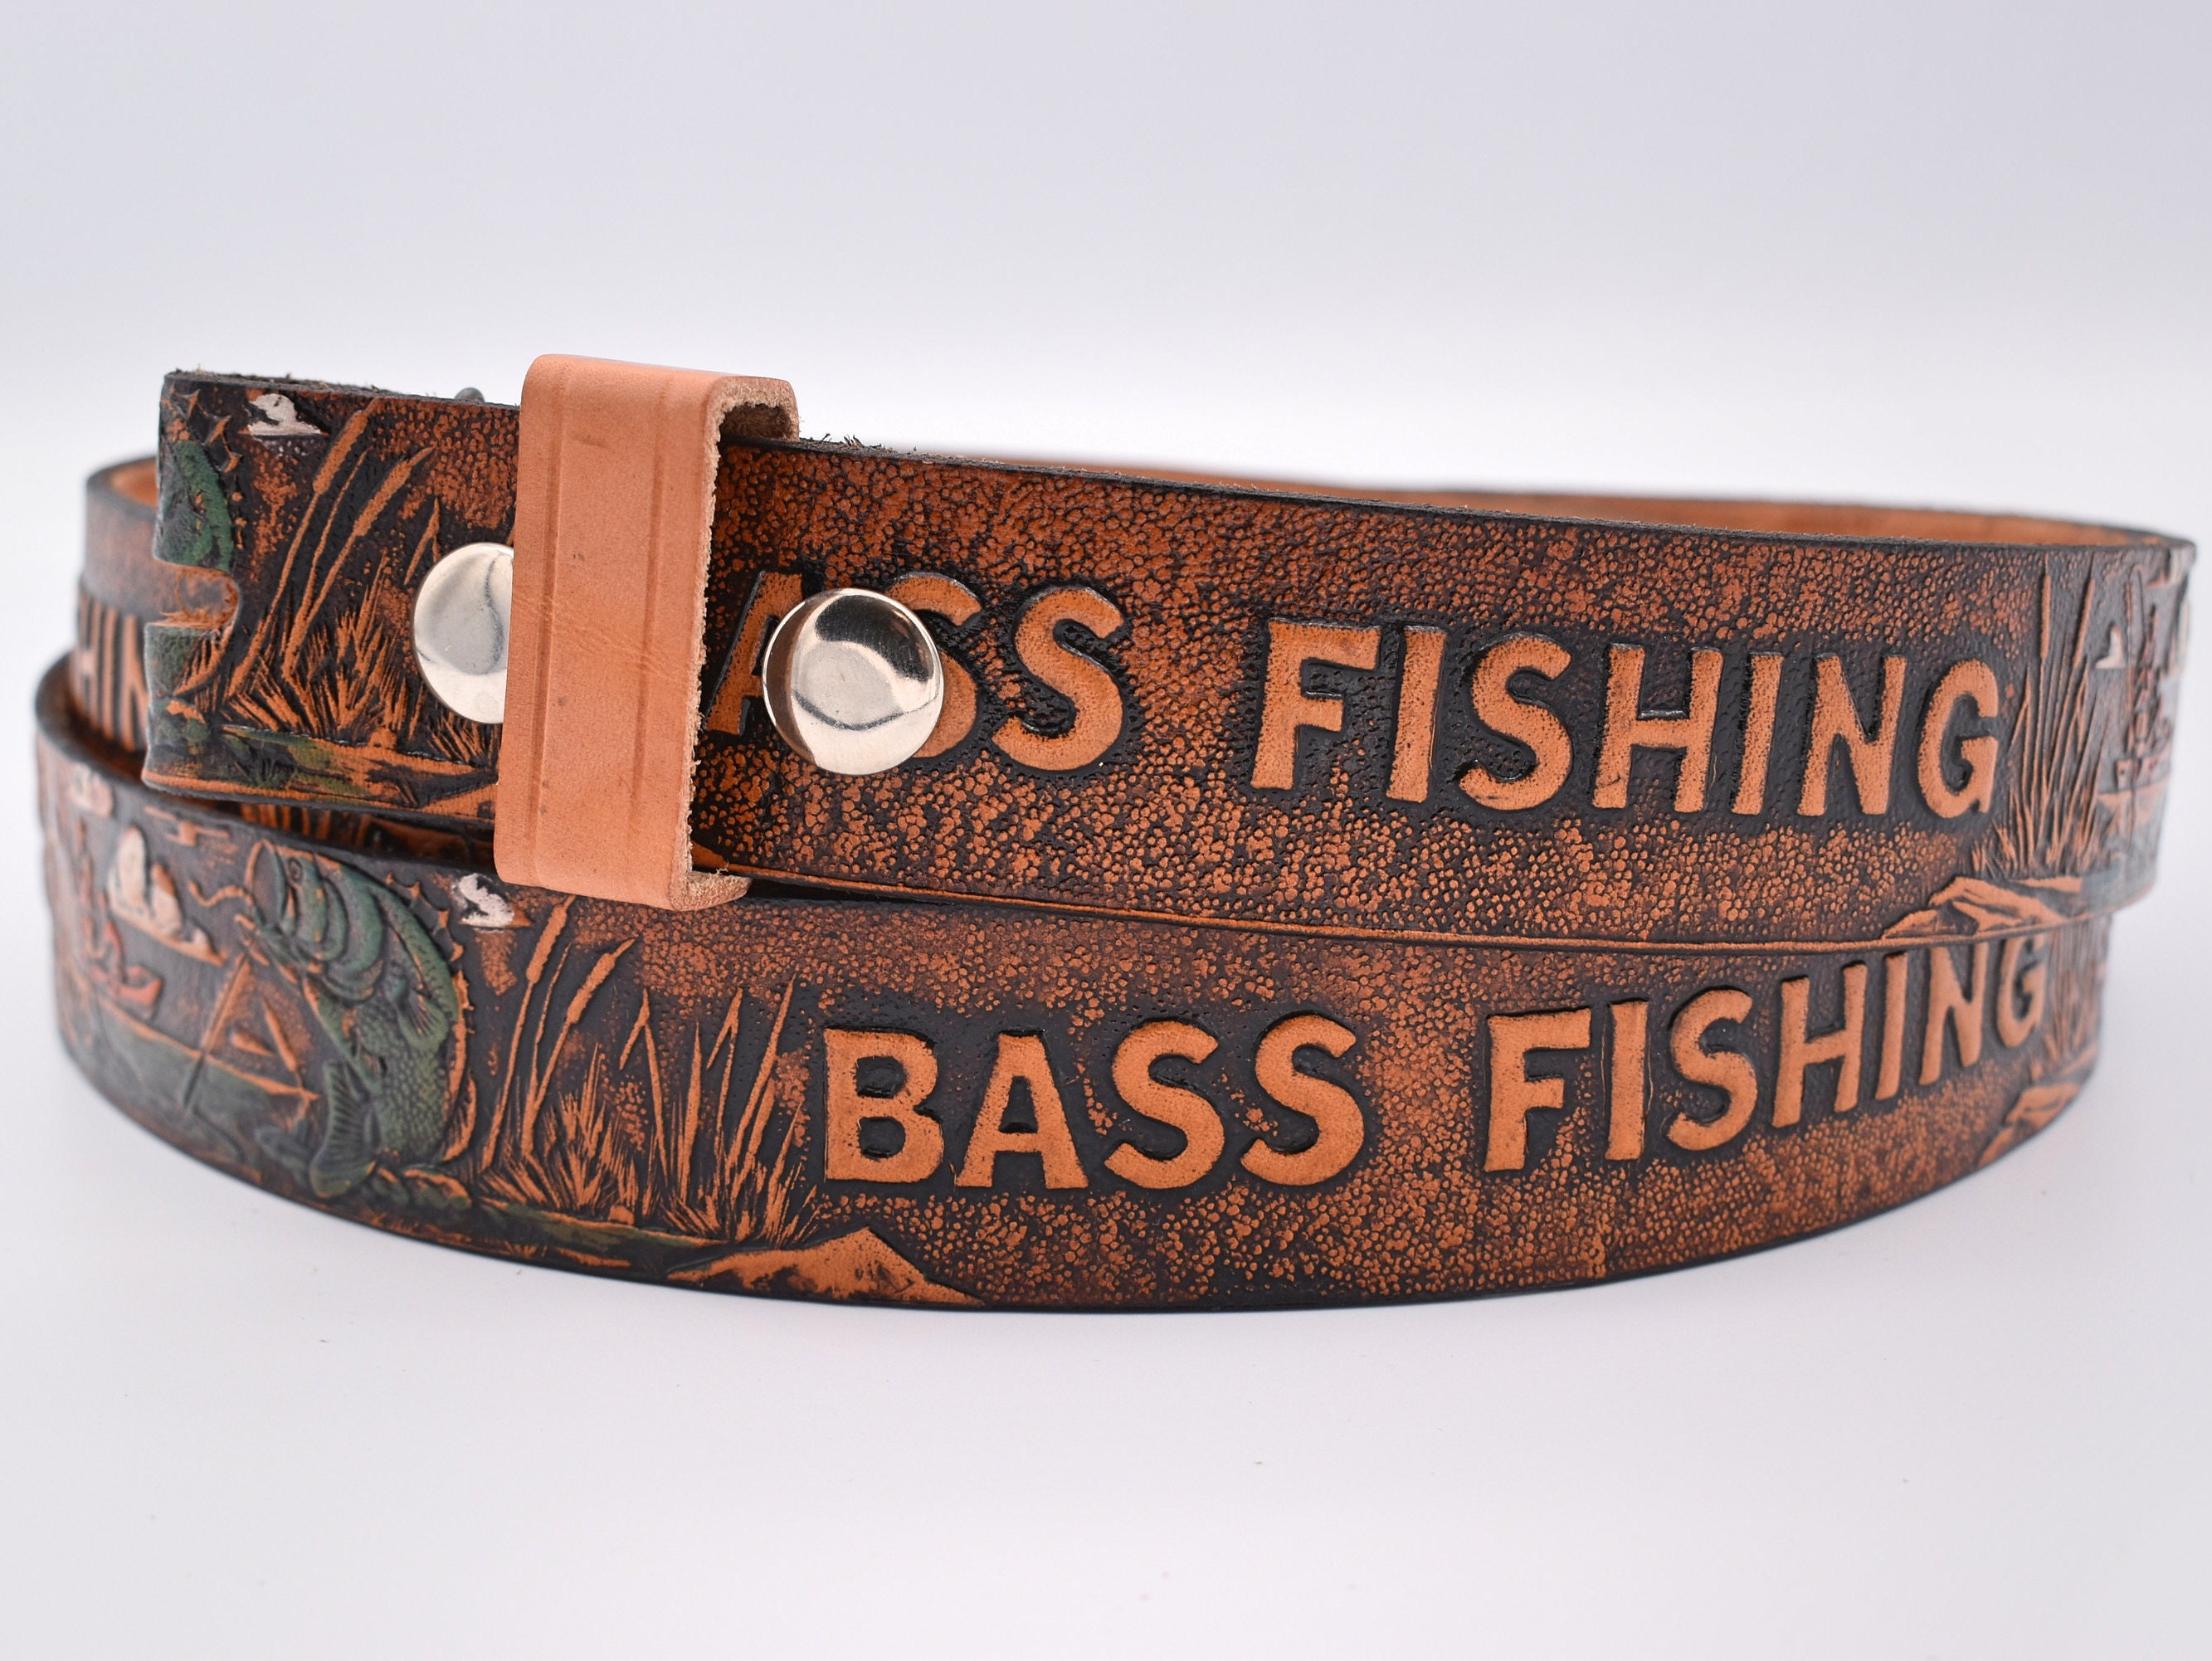 Vintage Genuine Leather Handmade Bass Fishing Belt CUSTOM SIZING Maximum 57  